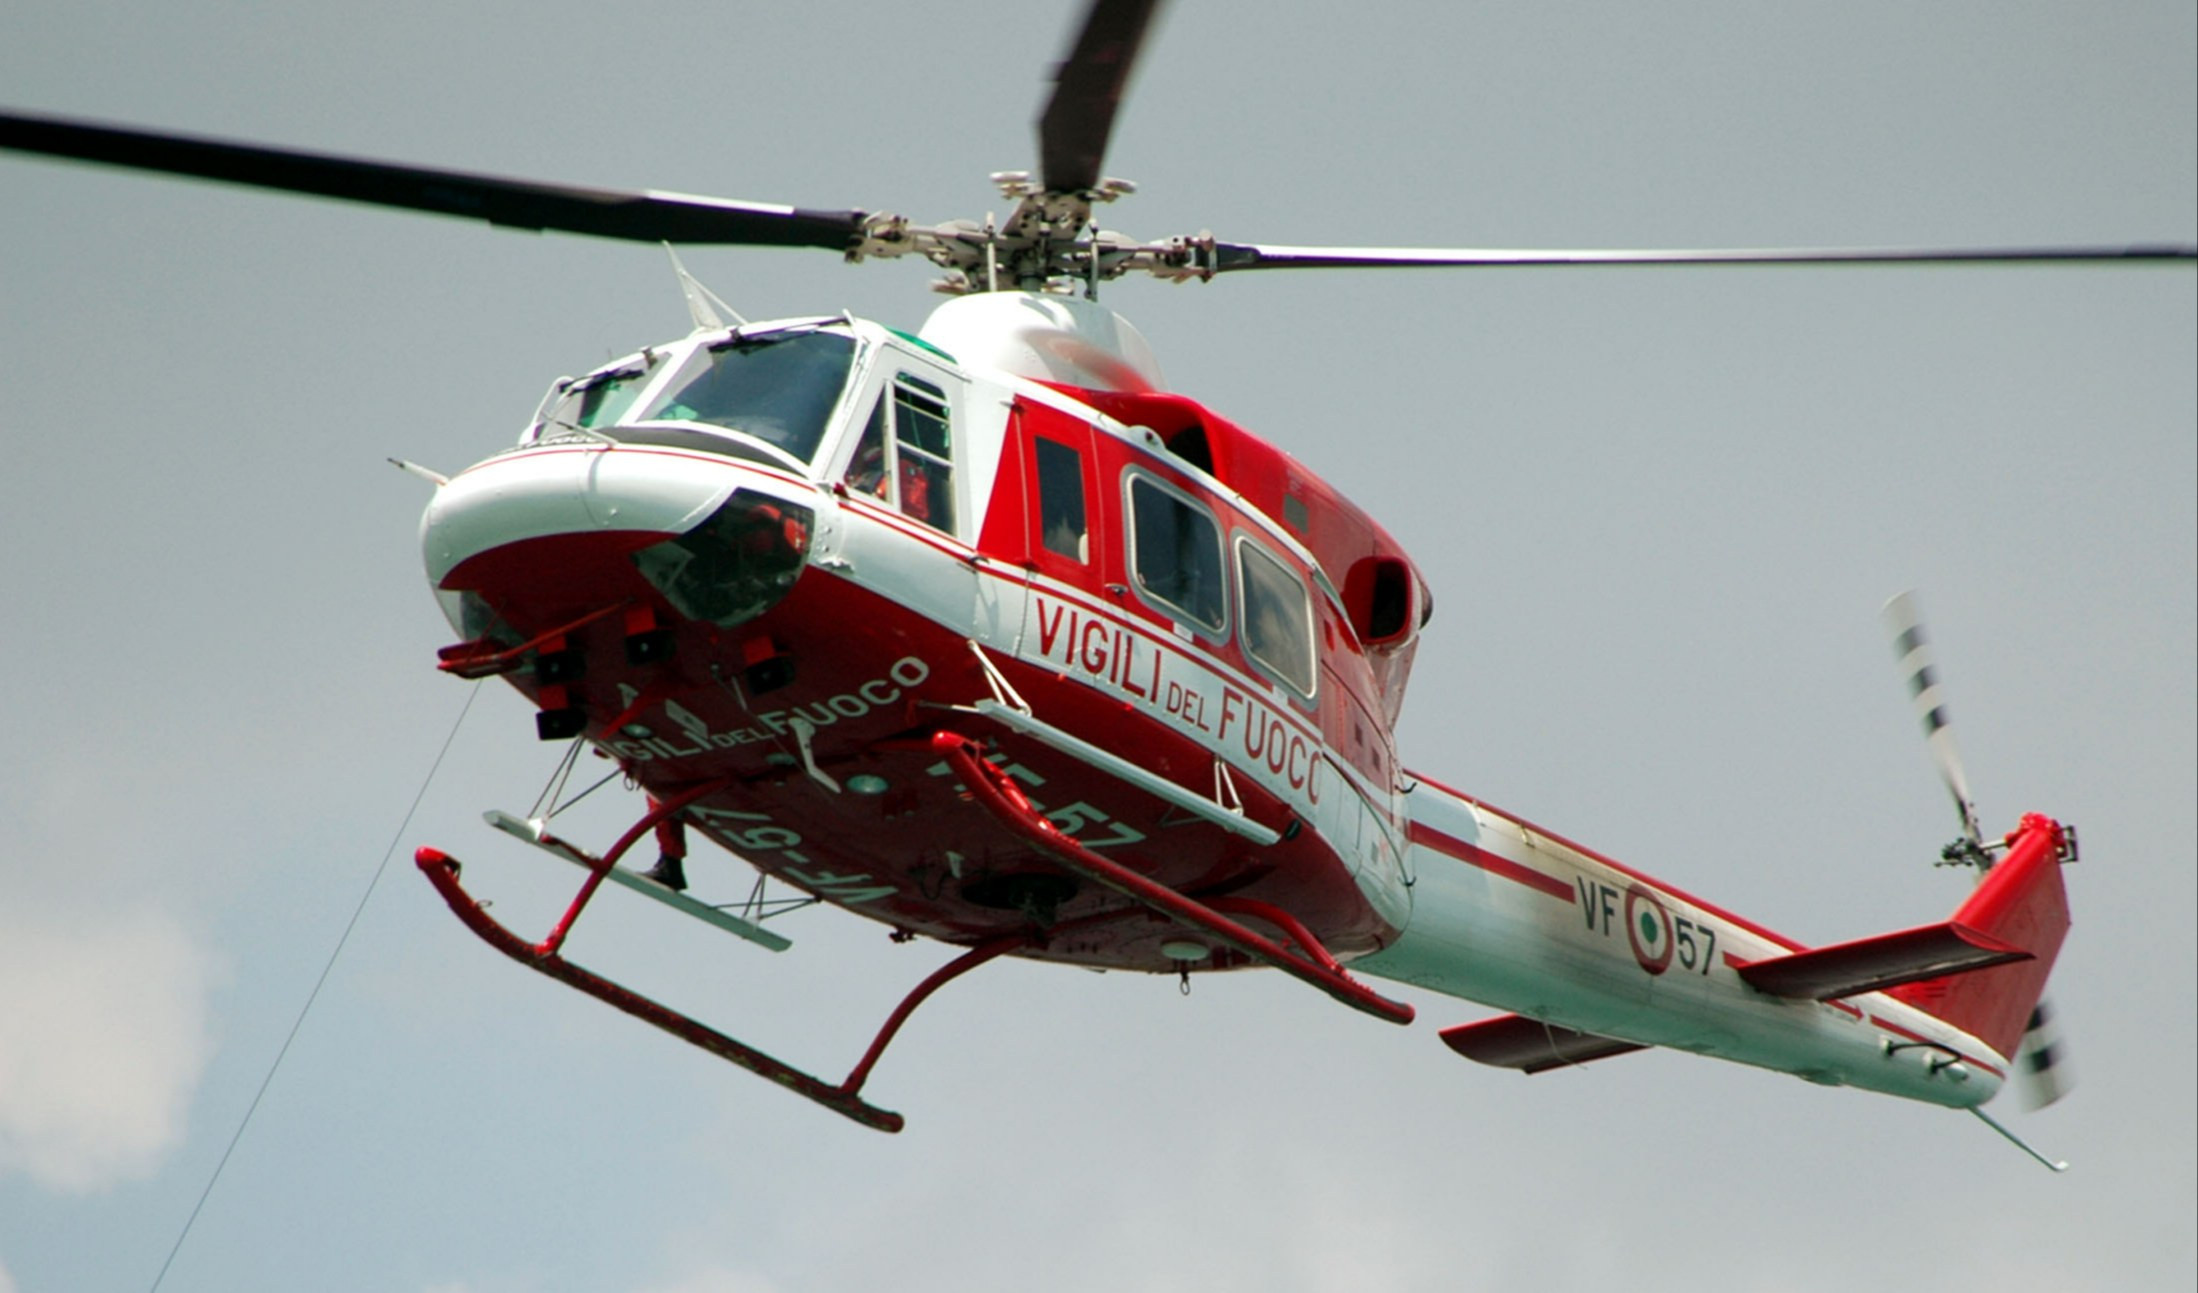 Ronco Scrivia, bimbo di 4 anni cade da due metri: in elicottero al Gaslini